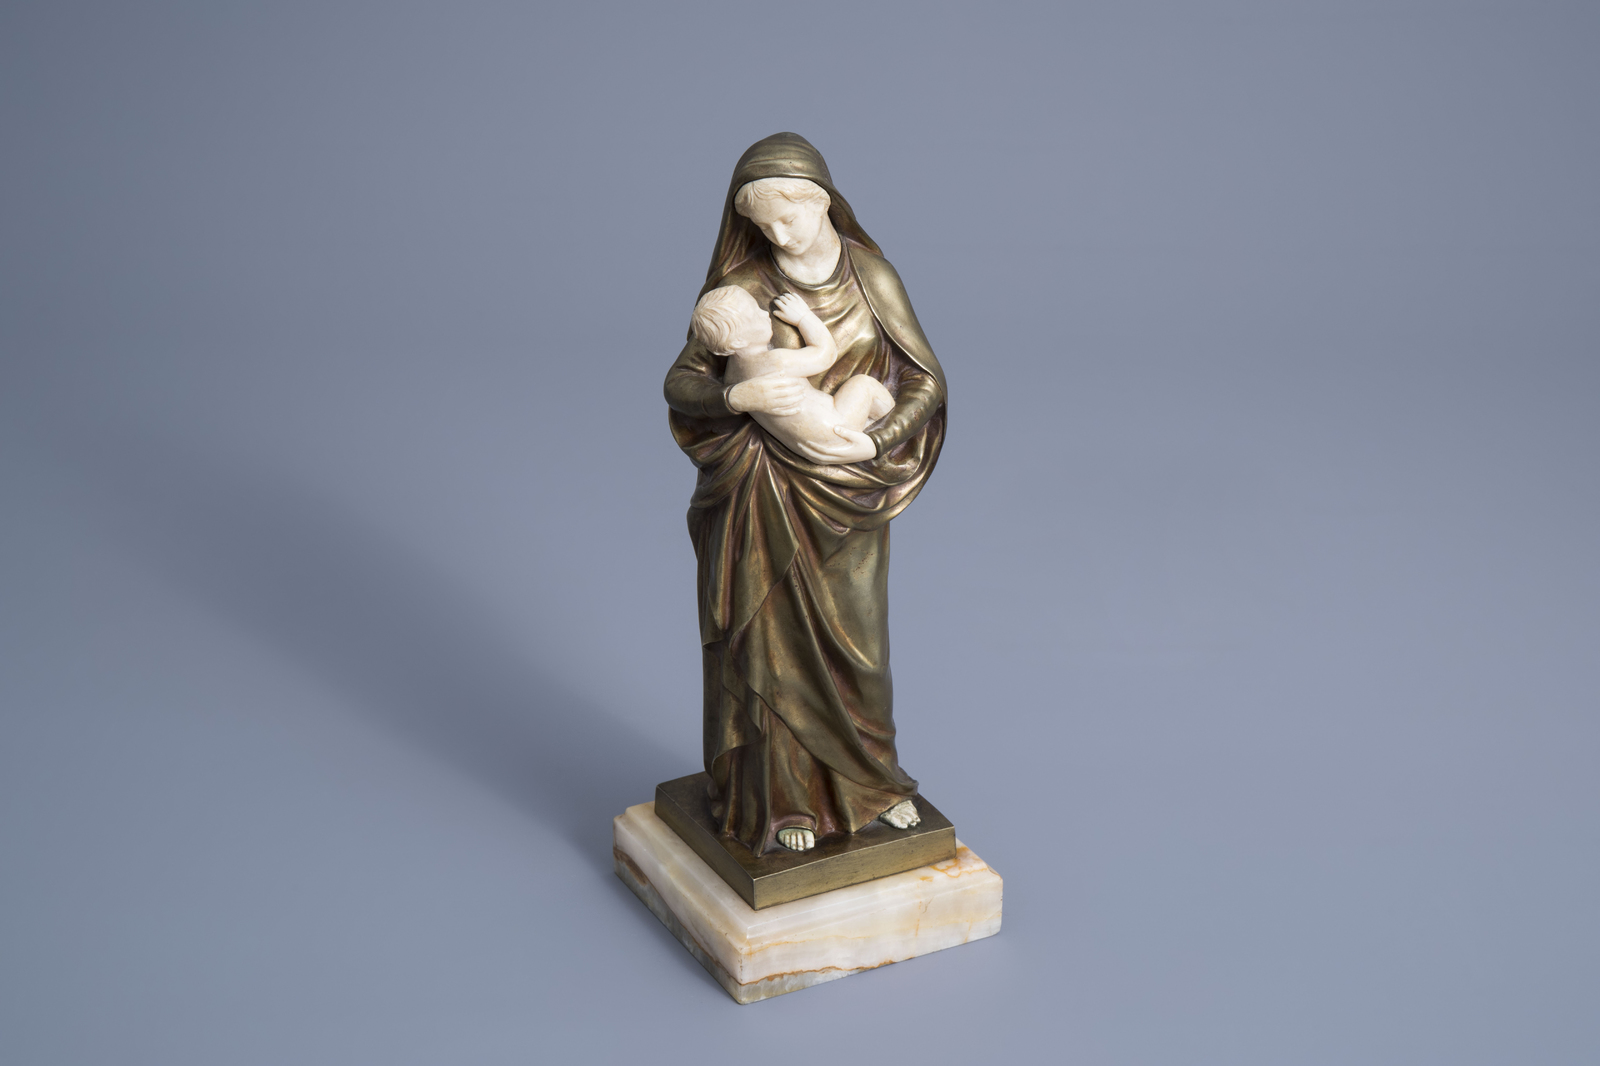 LŽon Morice (1868-1958): The Virgin and Child, chryselephantine on an onyx marble base